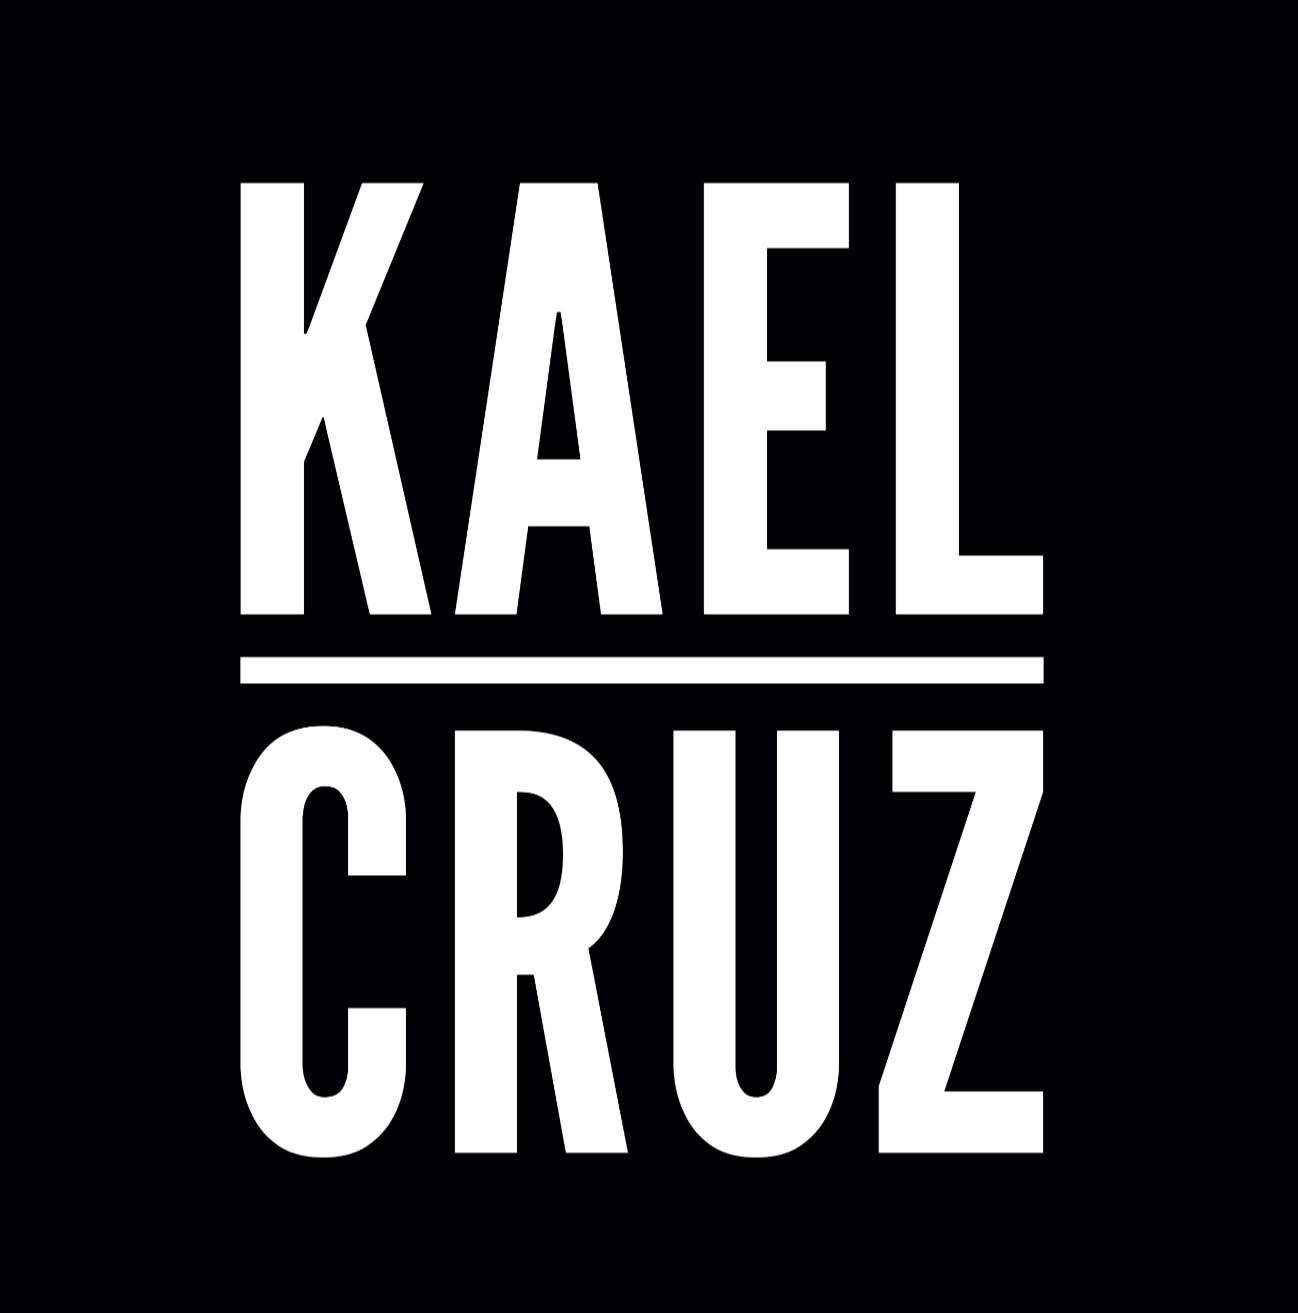 Kael Cruz